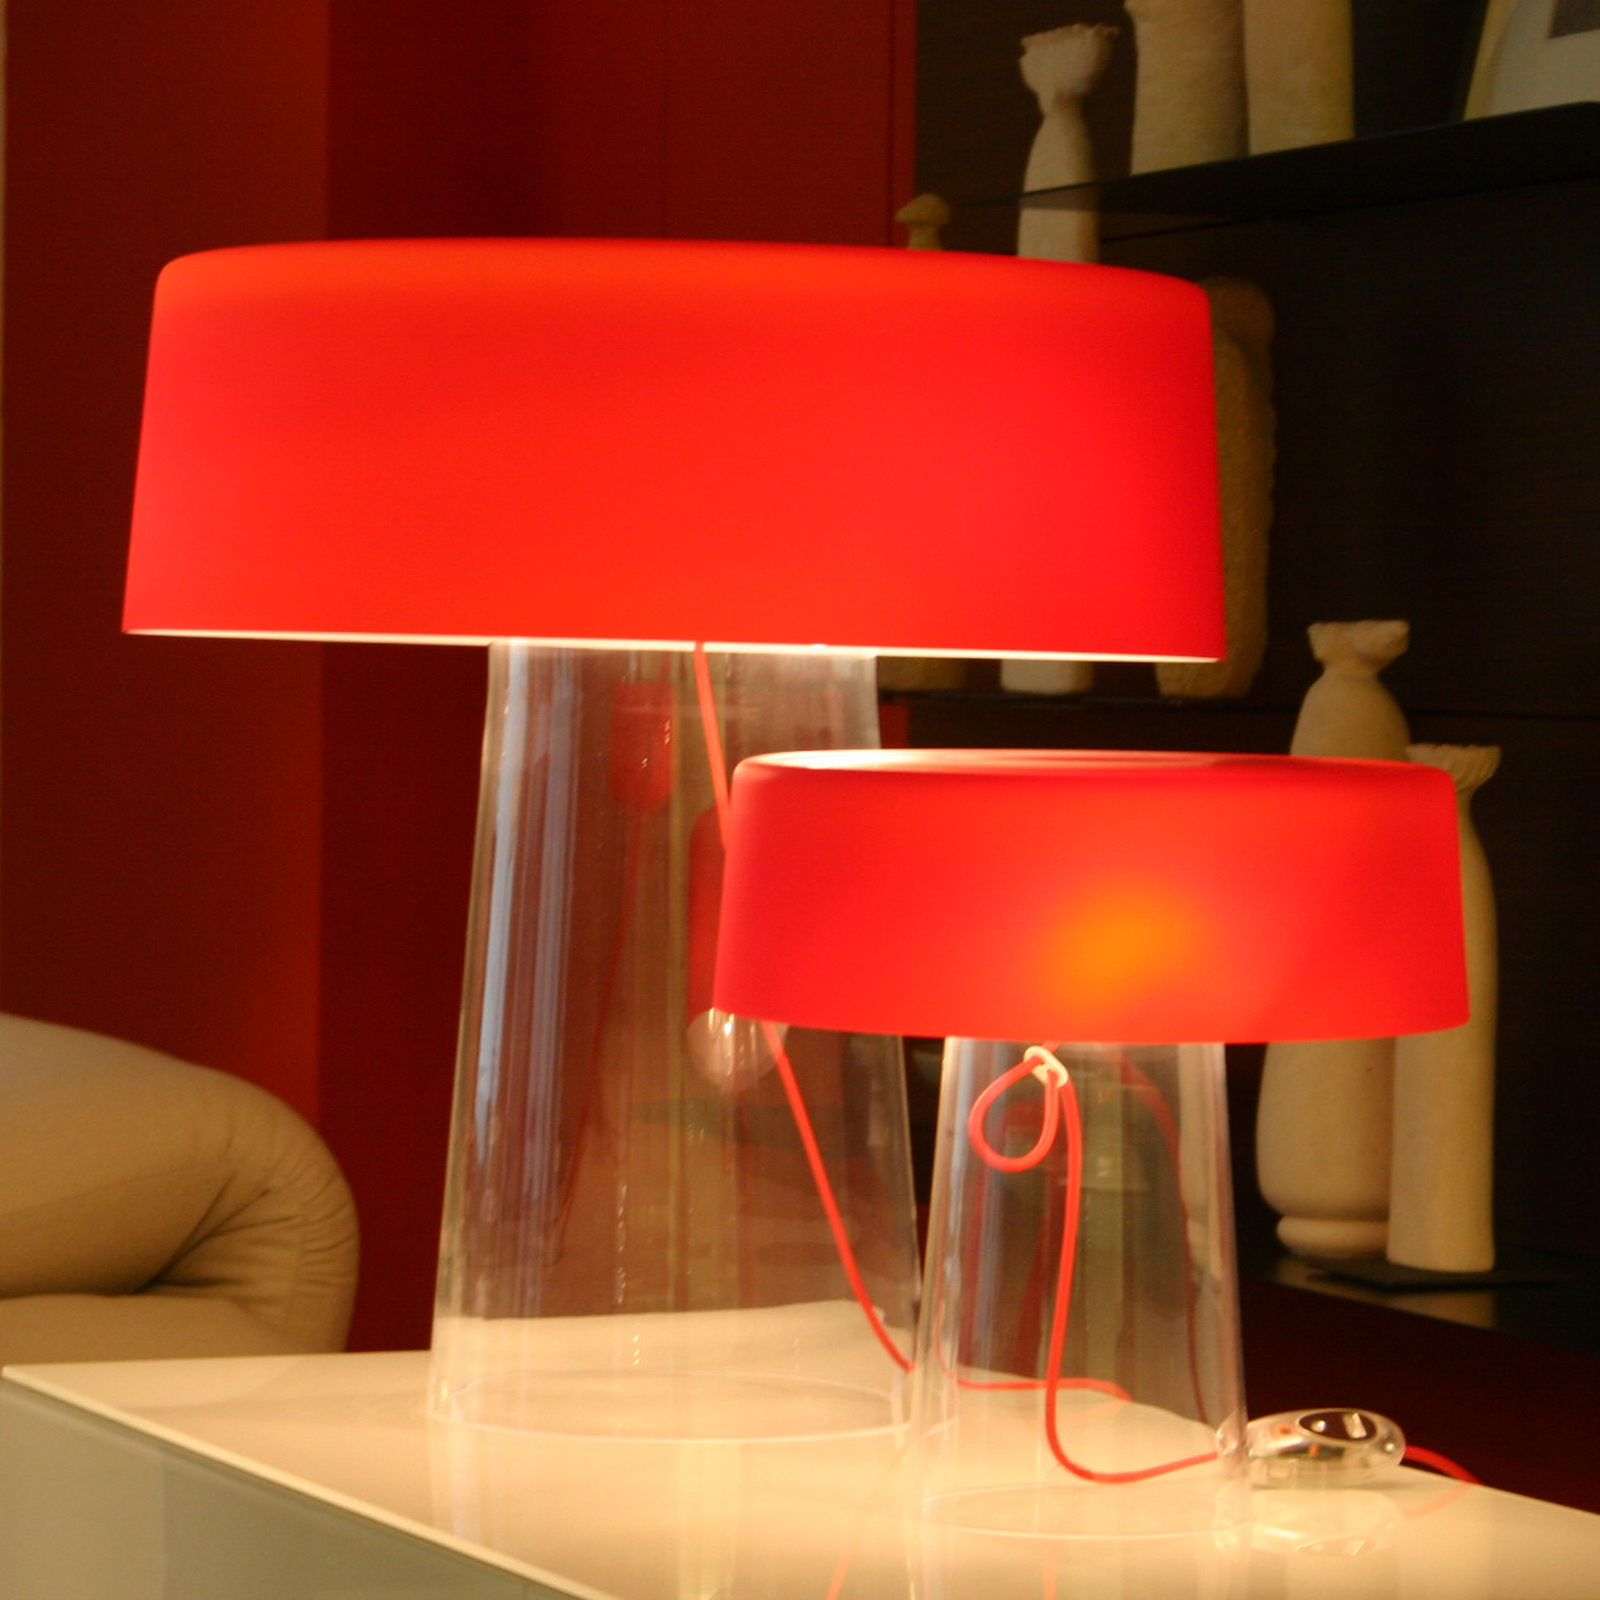 Prandina Glam lámpara de mesa, 48 cm, rojo